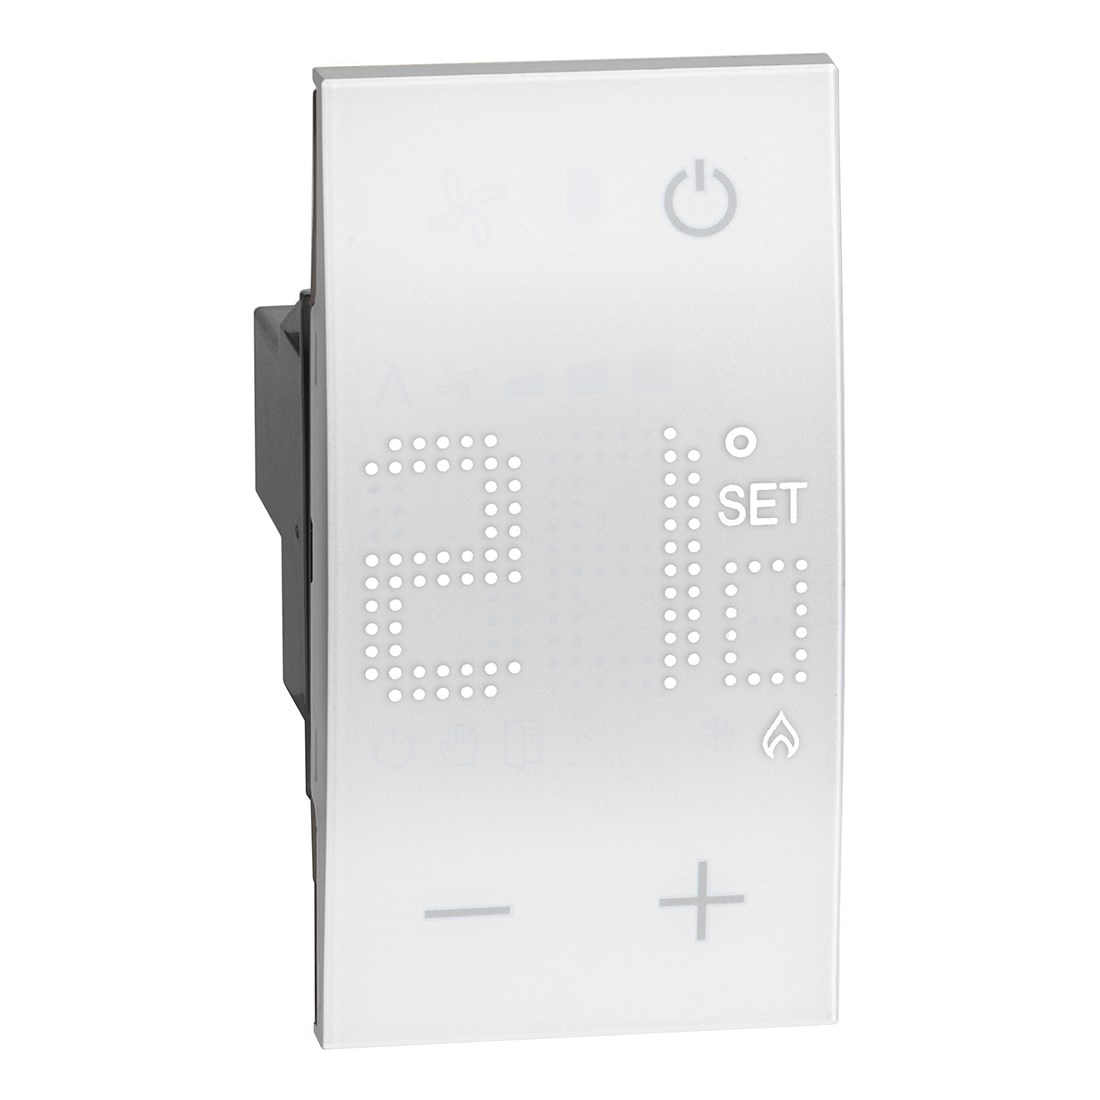 Bild von Bticino LivingNow 2-moduliger UP Thermostat mit Display / weiß